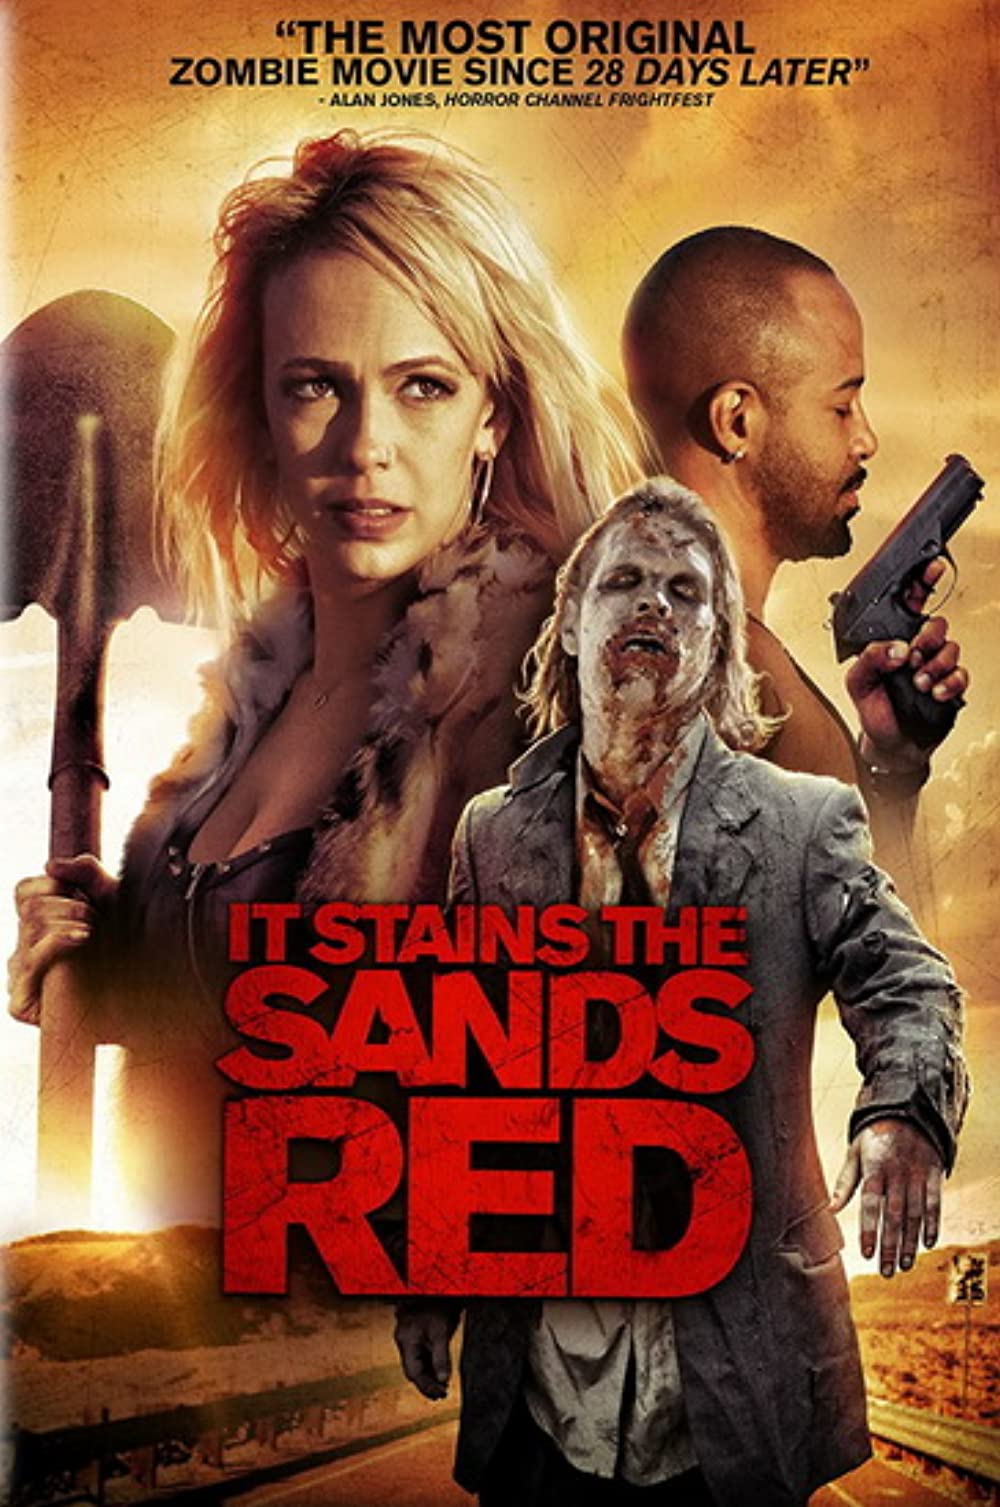 ดูหนังออนไลน์ฟรี IT STAINS THE SANDS RED (2017) ซอมบี้ทะเลทราย